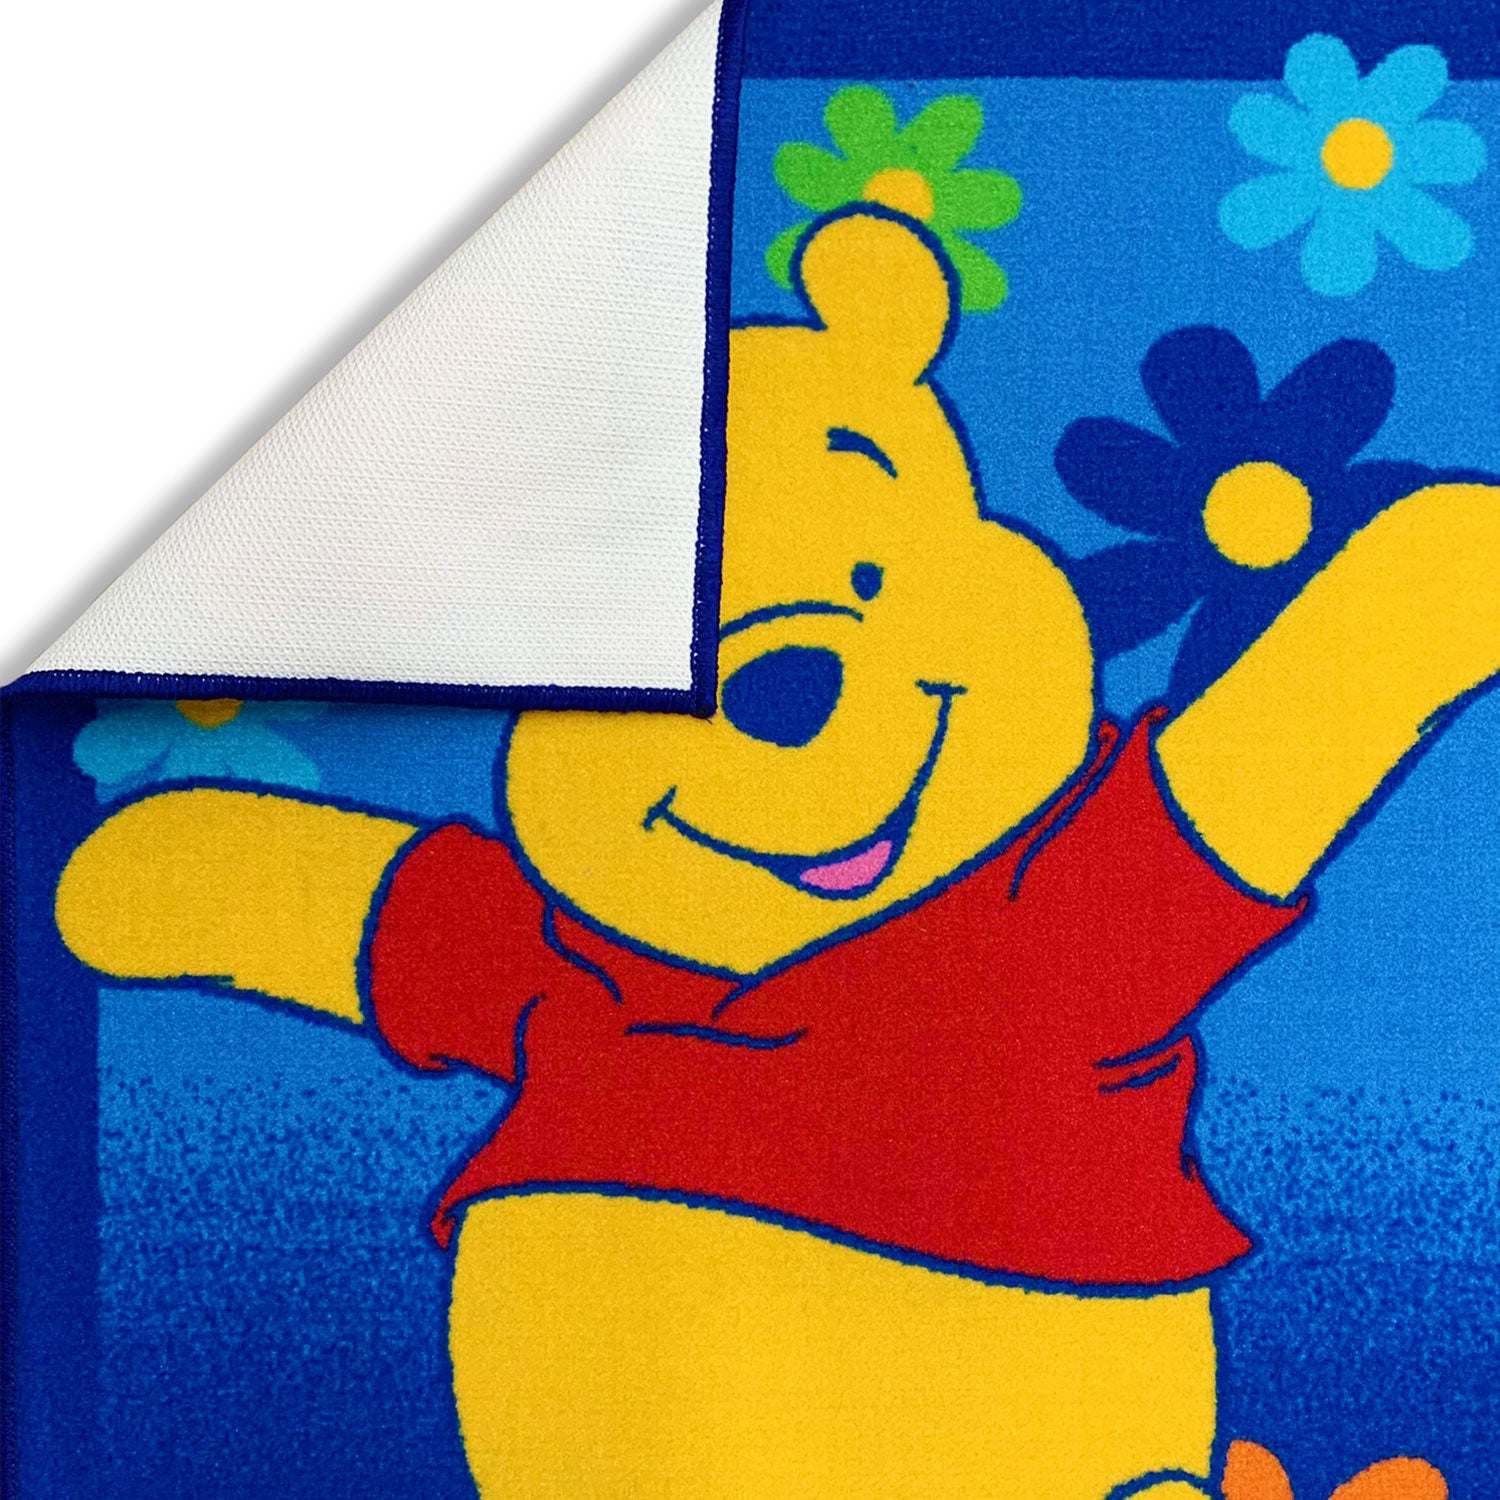 Tappeto antiscivolo cameretta bambini Disney Winnie the Pooh 80x120 cm 4850